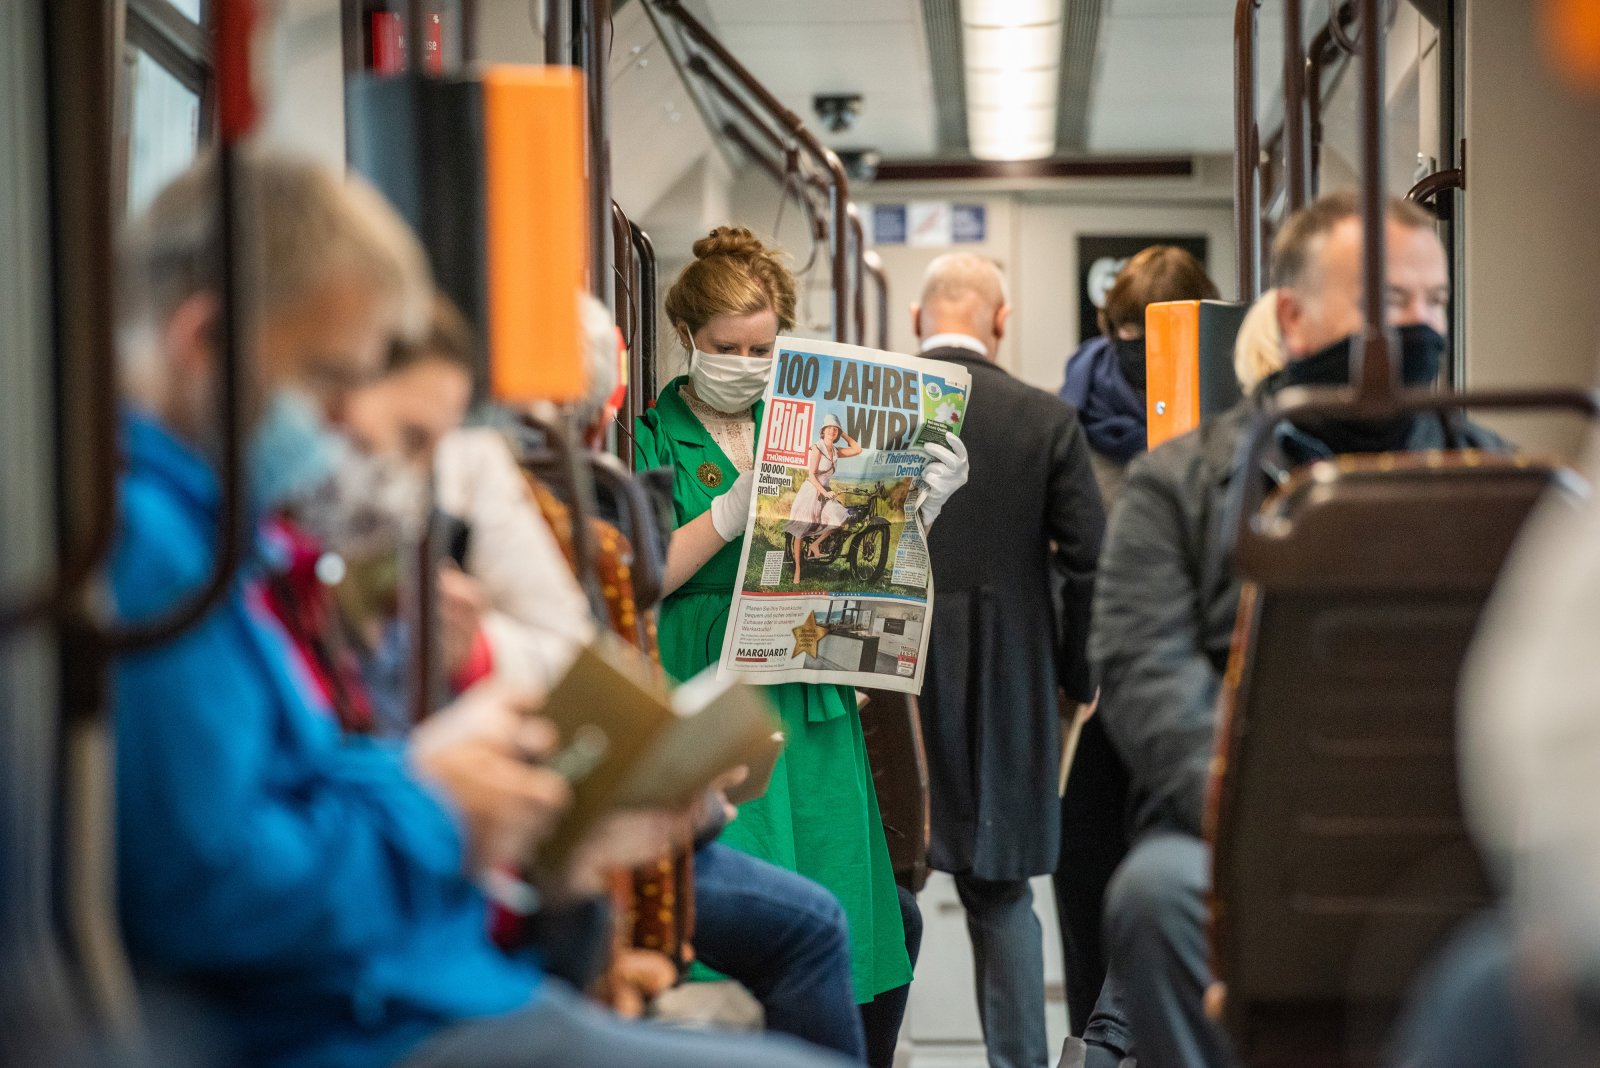 Eine Frau ließt eine Zeitung in der Straßenbahn mit der Schlagzeile "100 Jahre Wir!"